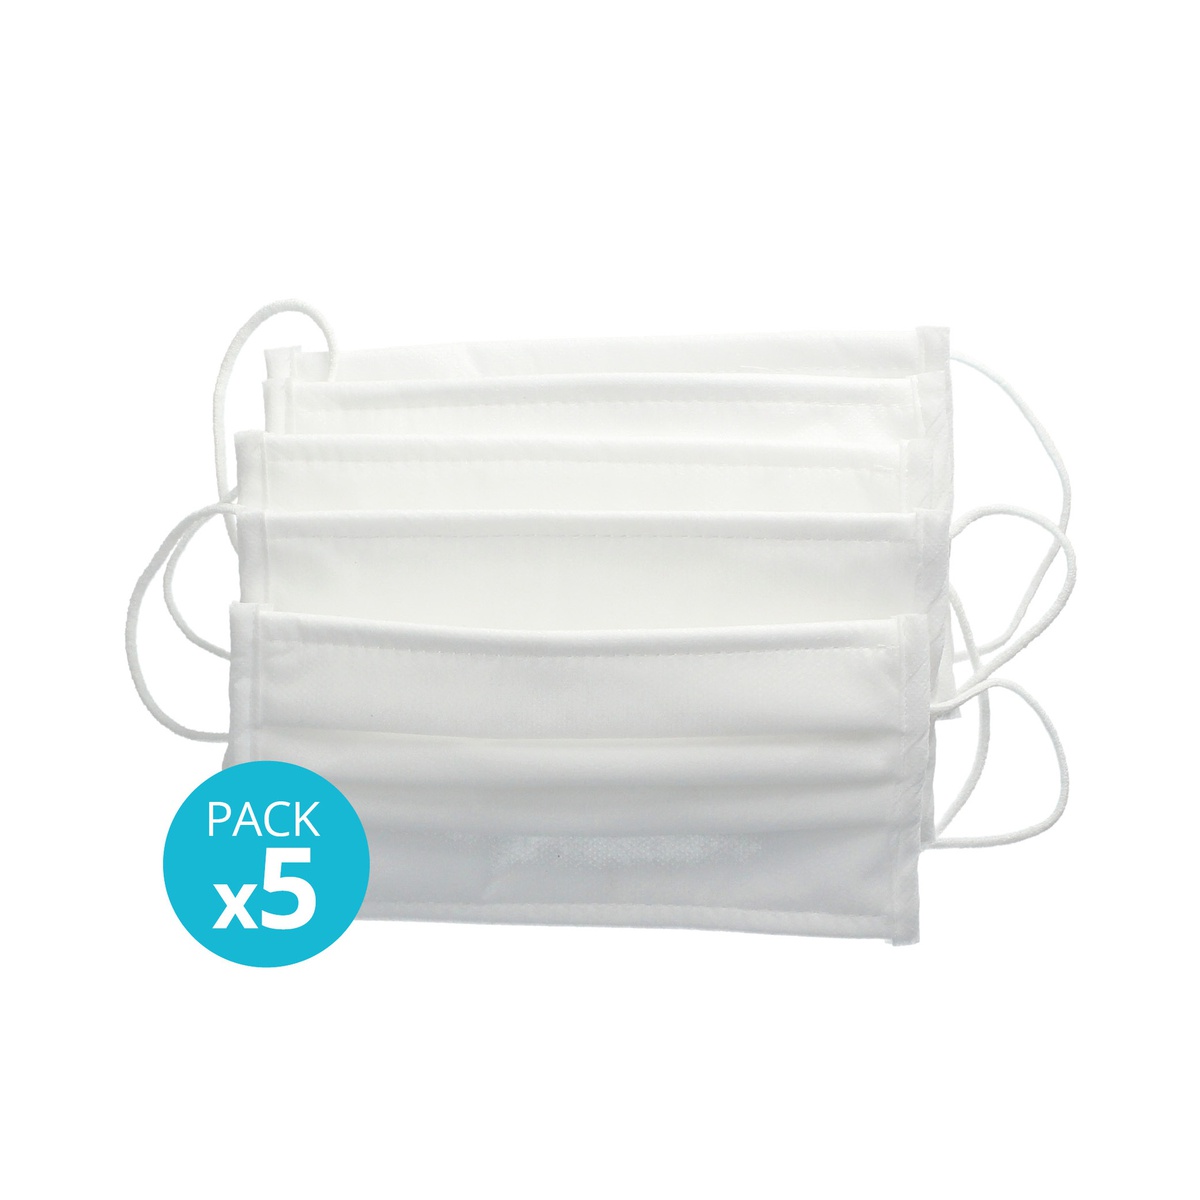 Pack 5 Mascarillas higiénicas lavables/reutilizables